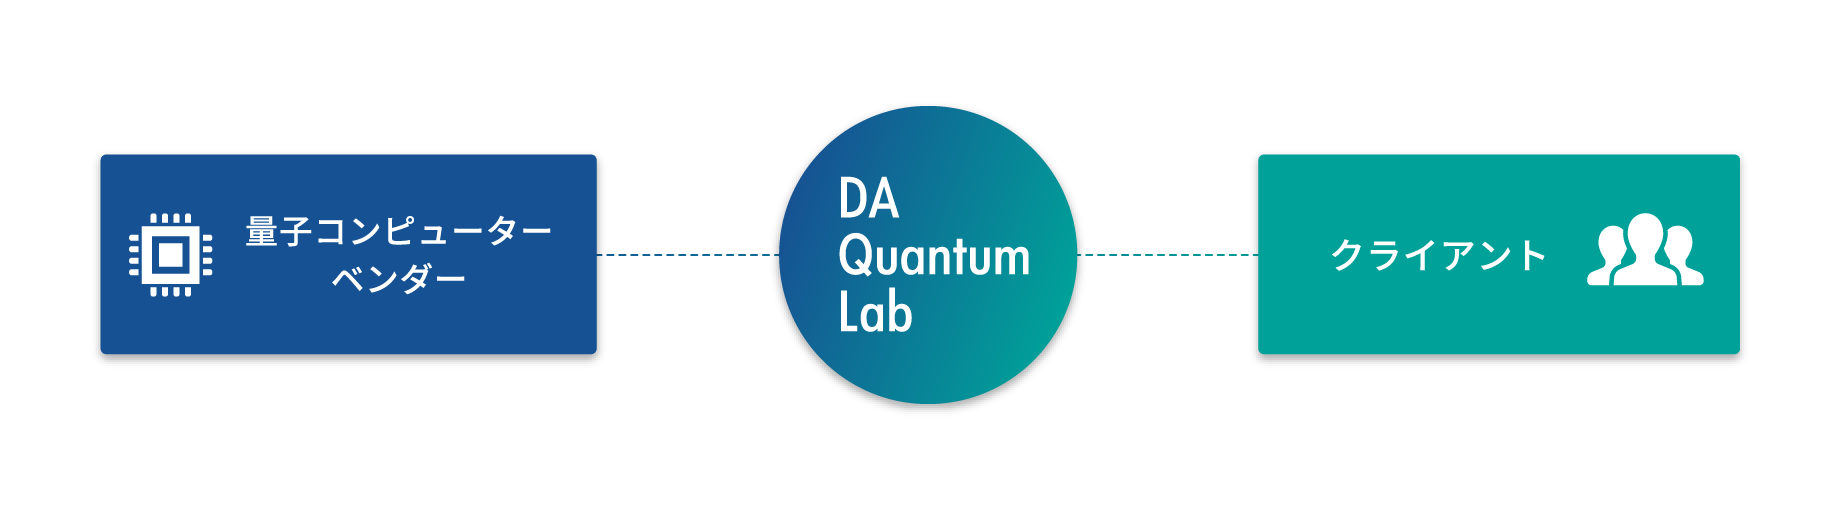 DA Quantum Lab